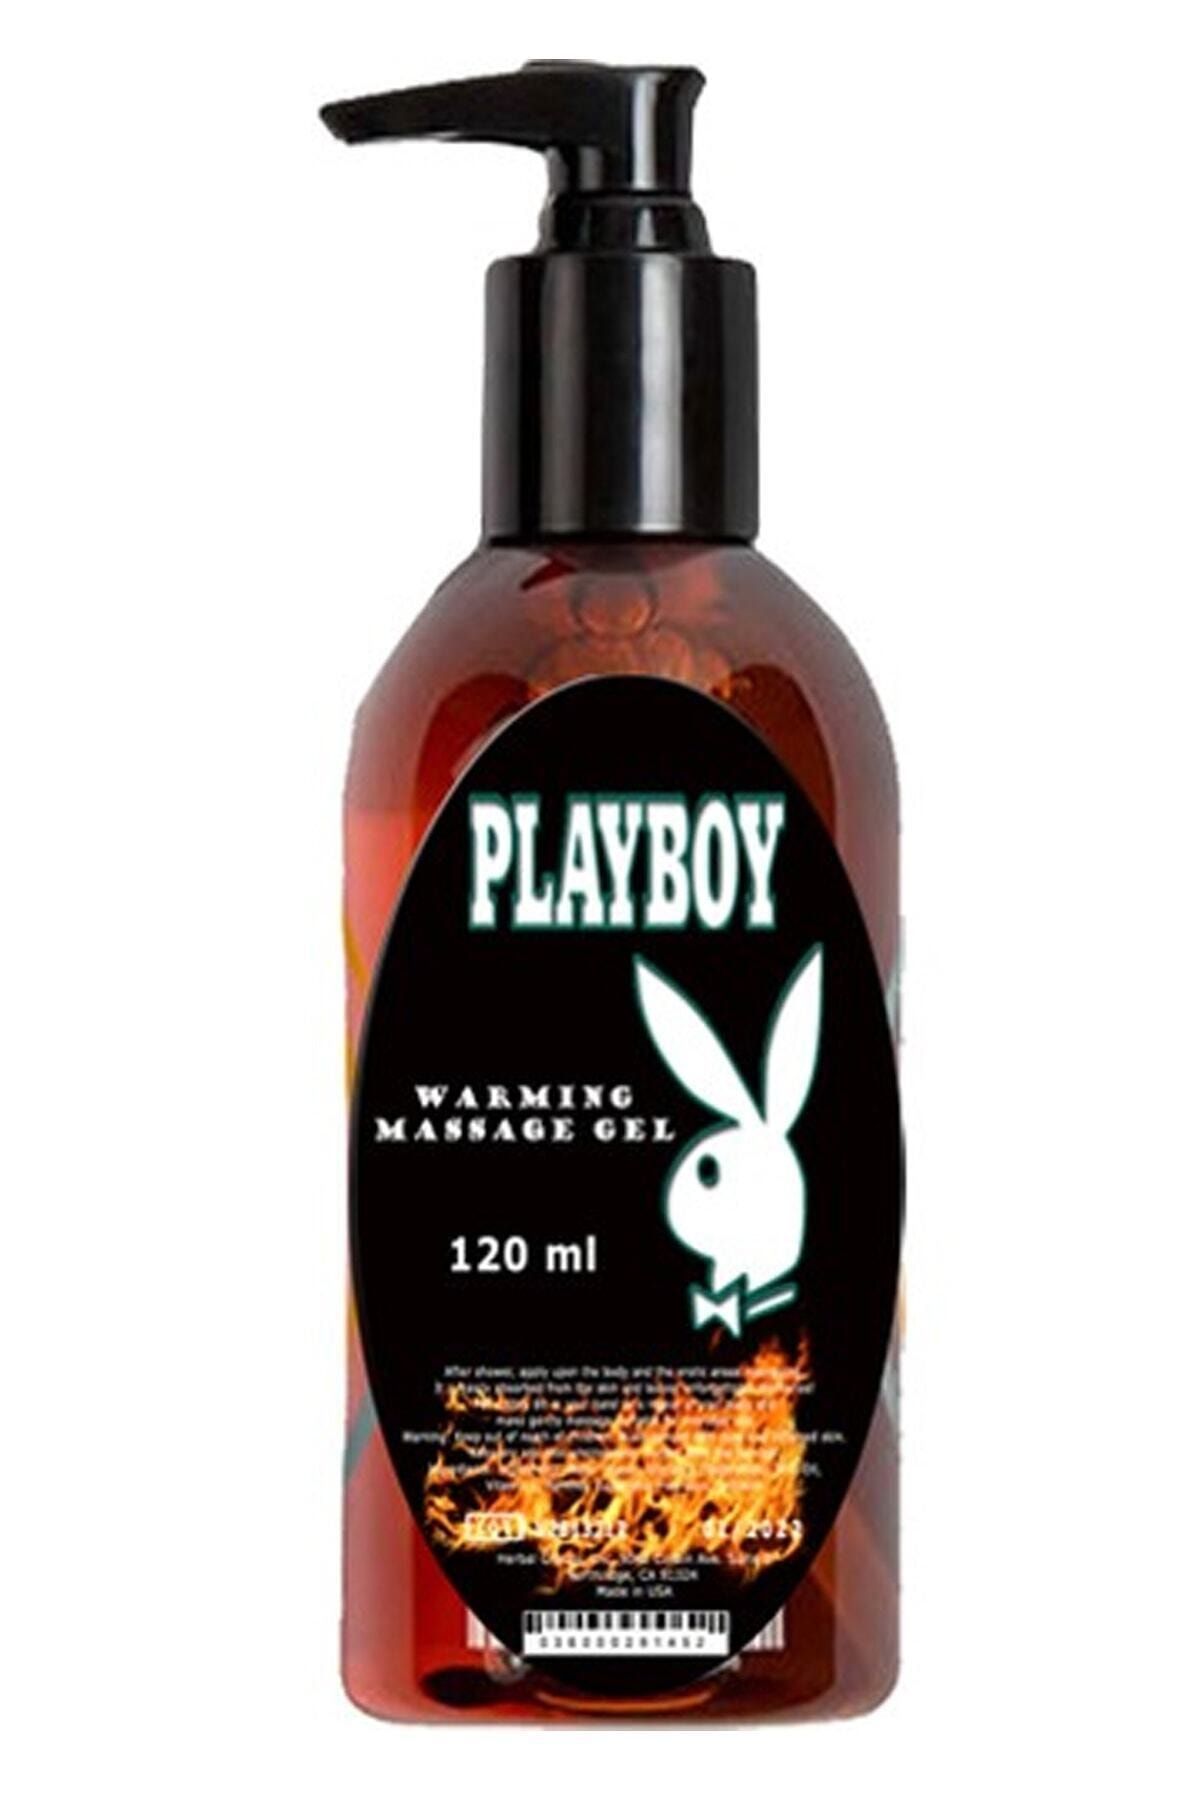 Playboy Massage Gel Rahatlatıcı Tüm Vücut Aromaterapi Masaj Yağı Jeli 120 Ml